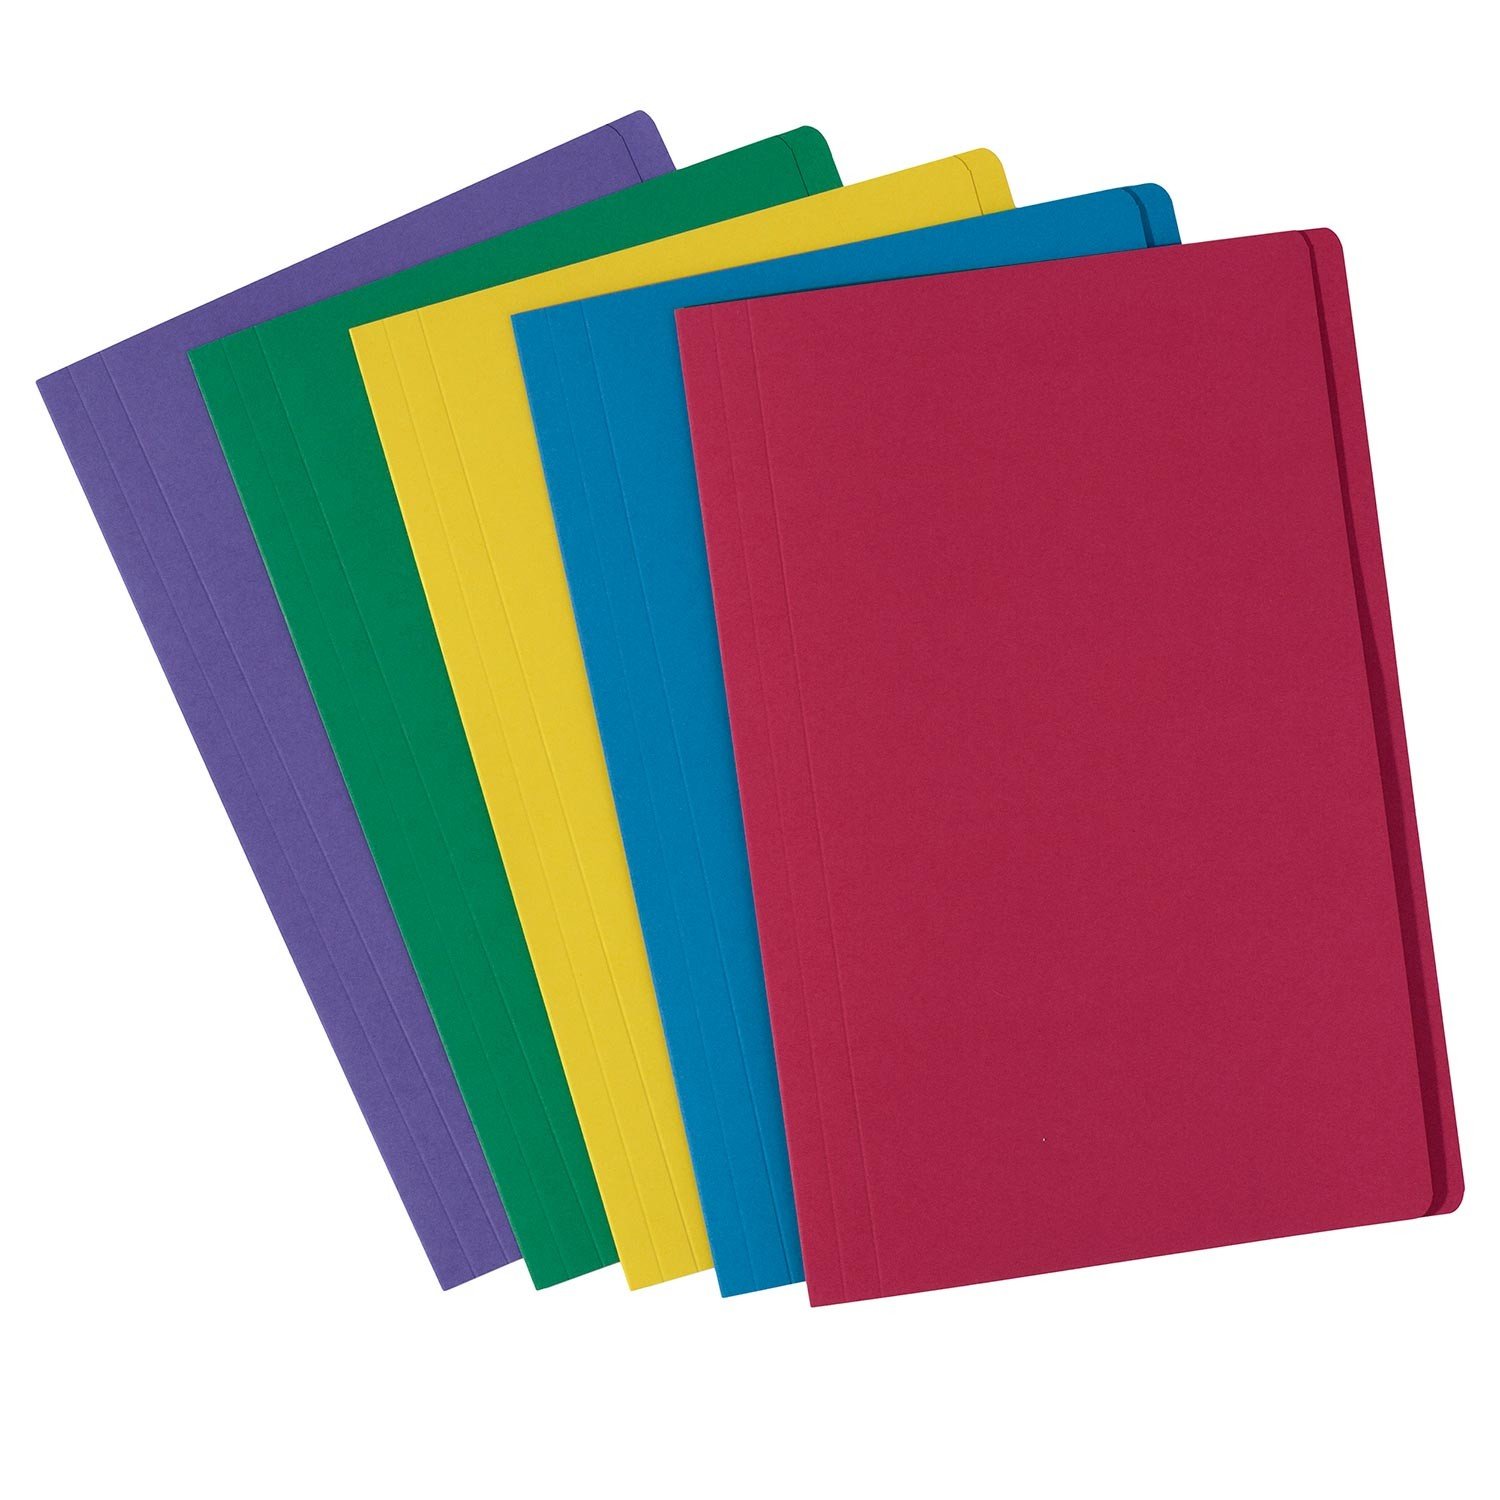 web design manila folder color